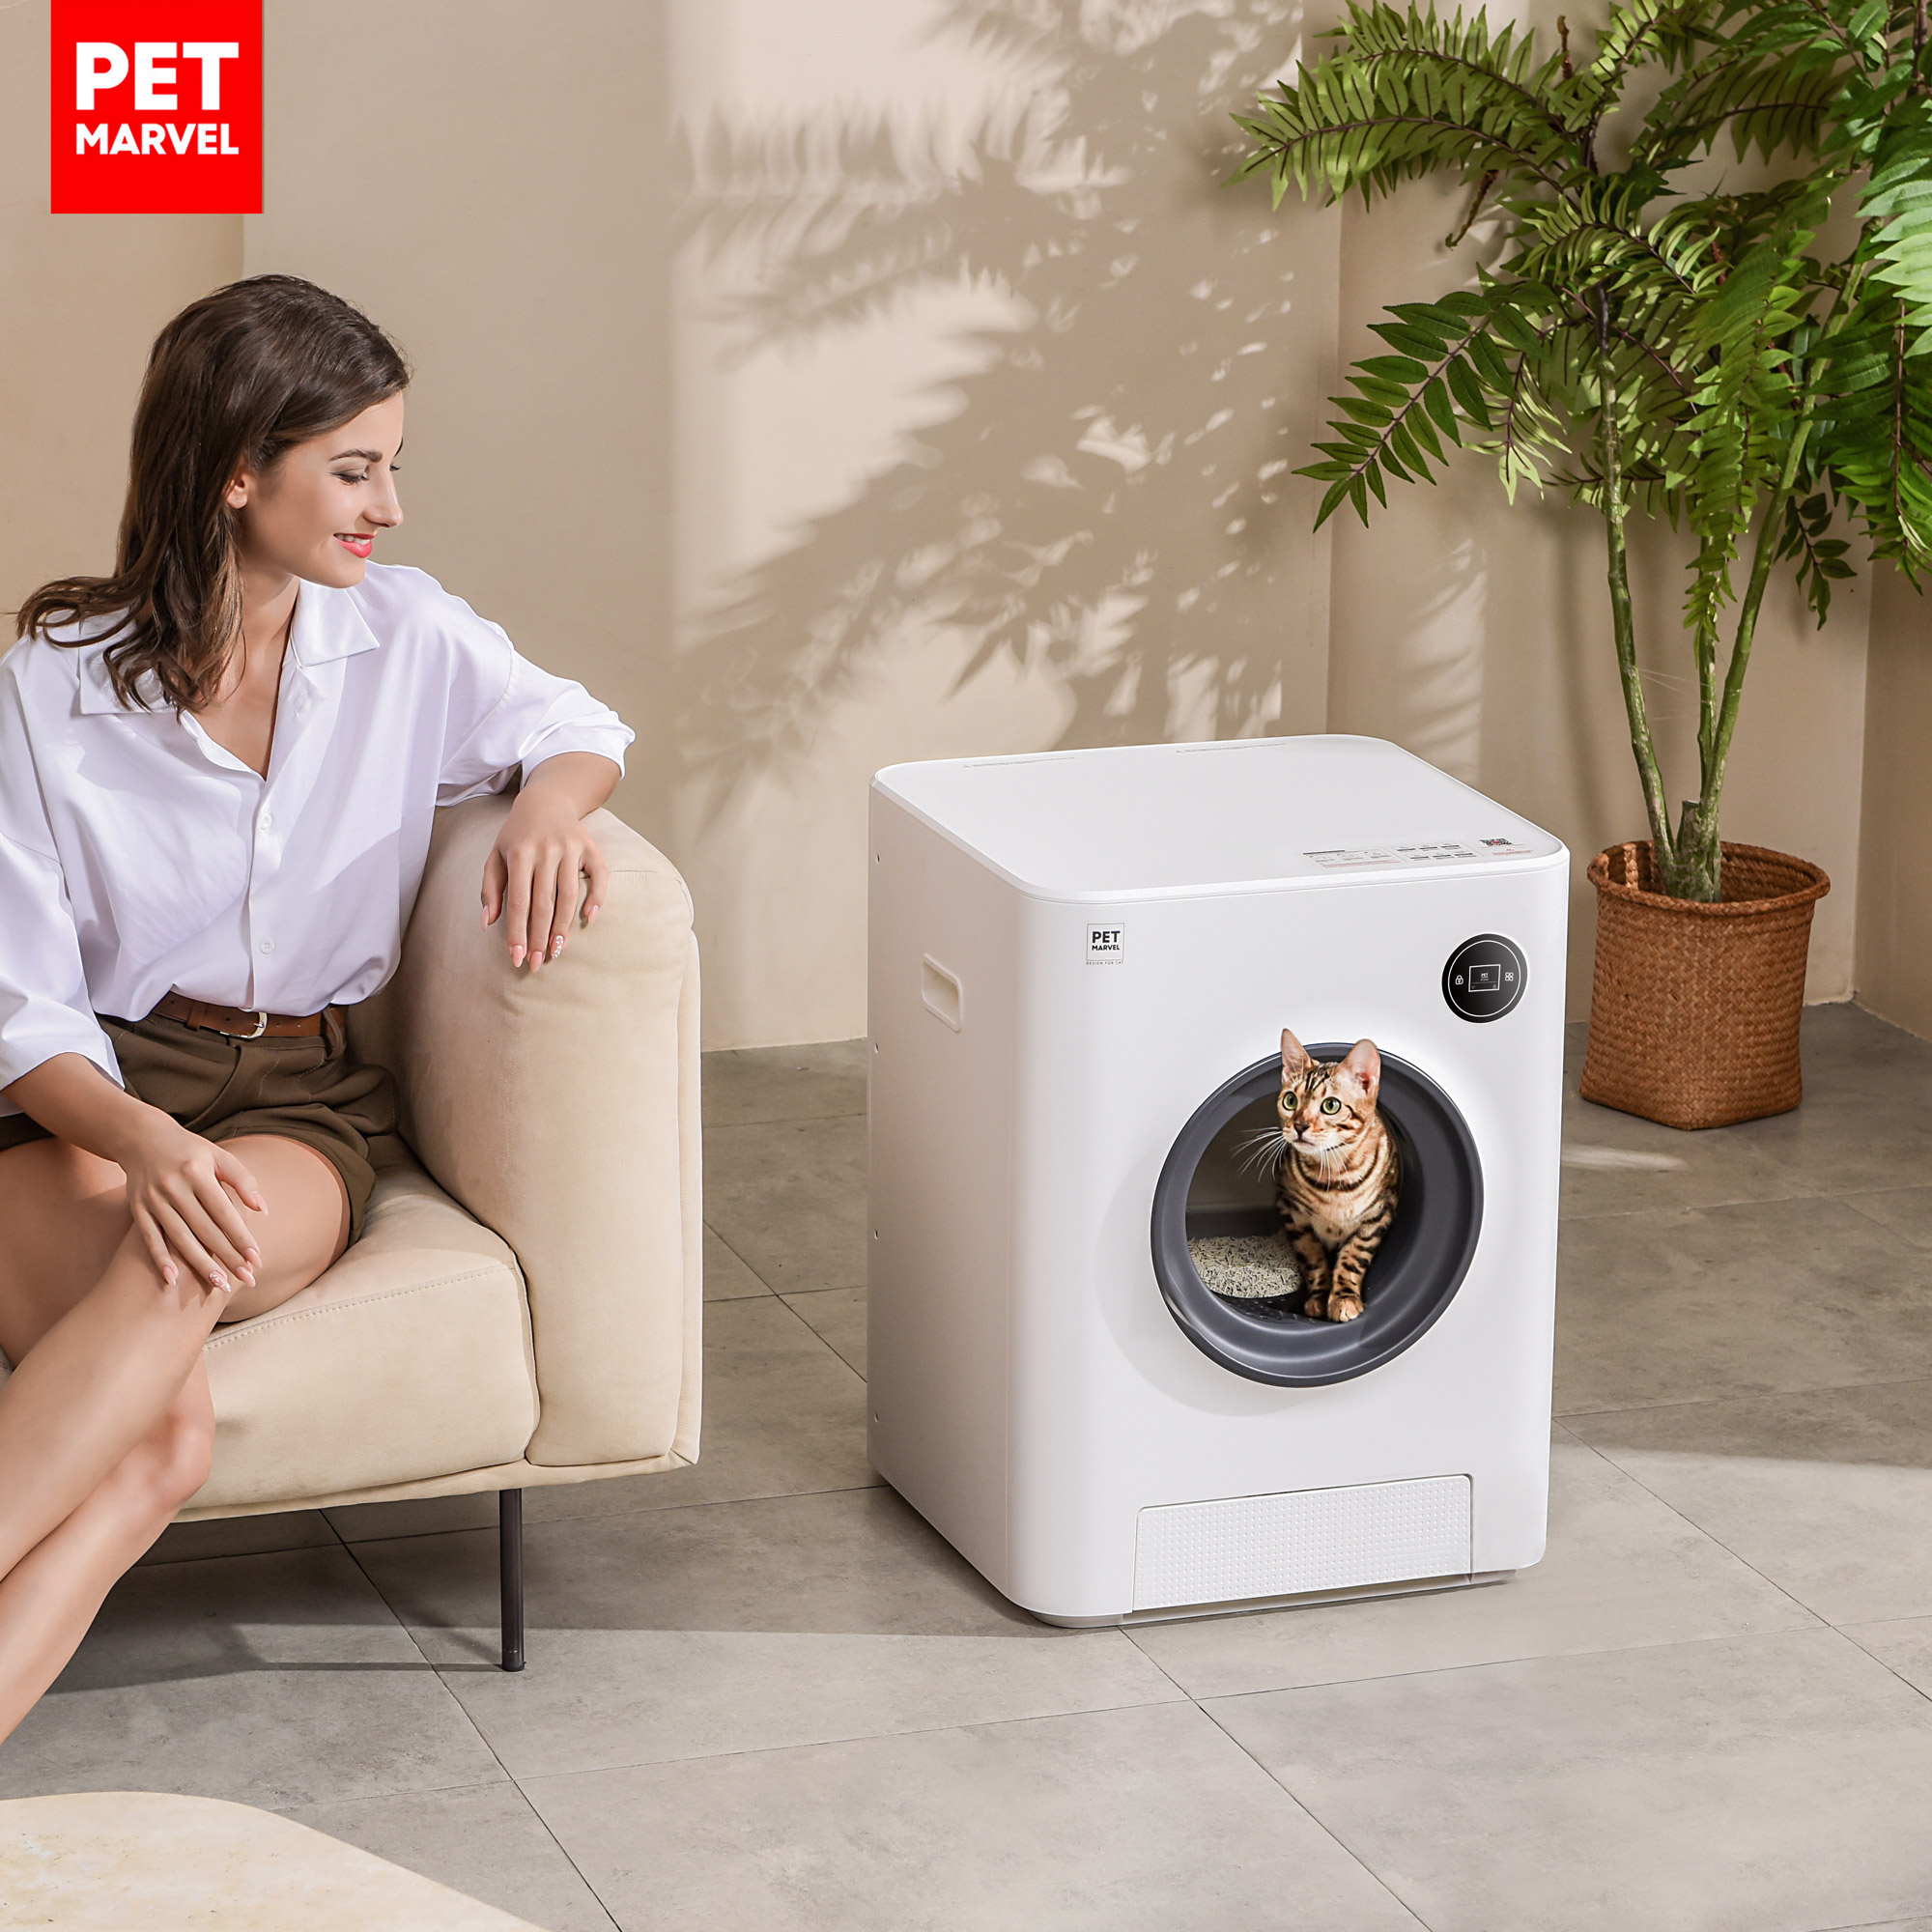 PET MARVEL Magic Cube Smart Cat Toilet - minimal design, remote control mobile app, built-in ozone, spacious interior